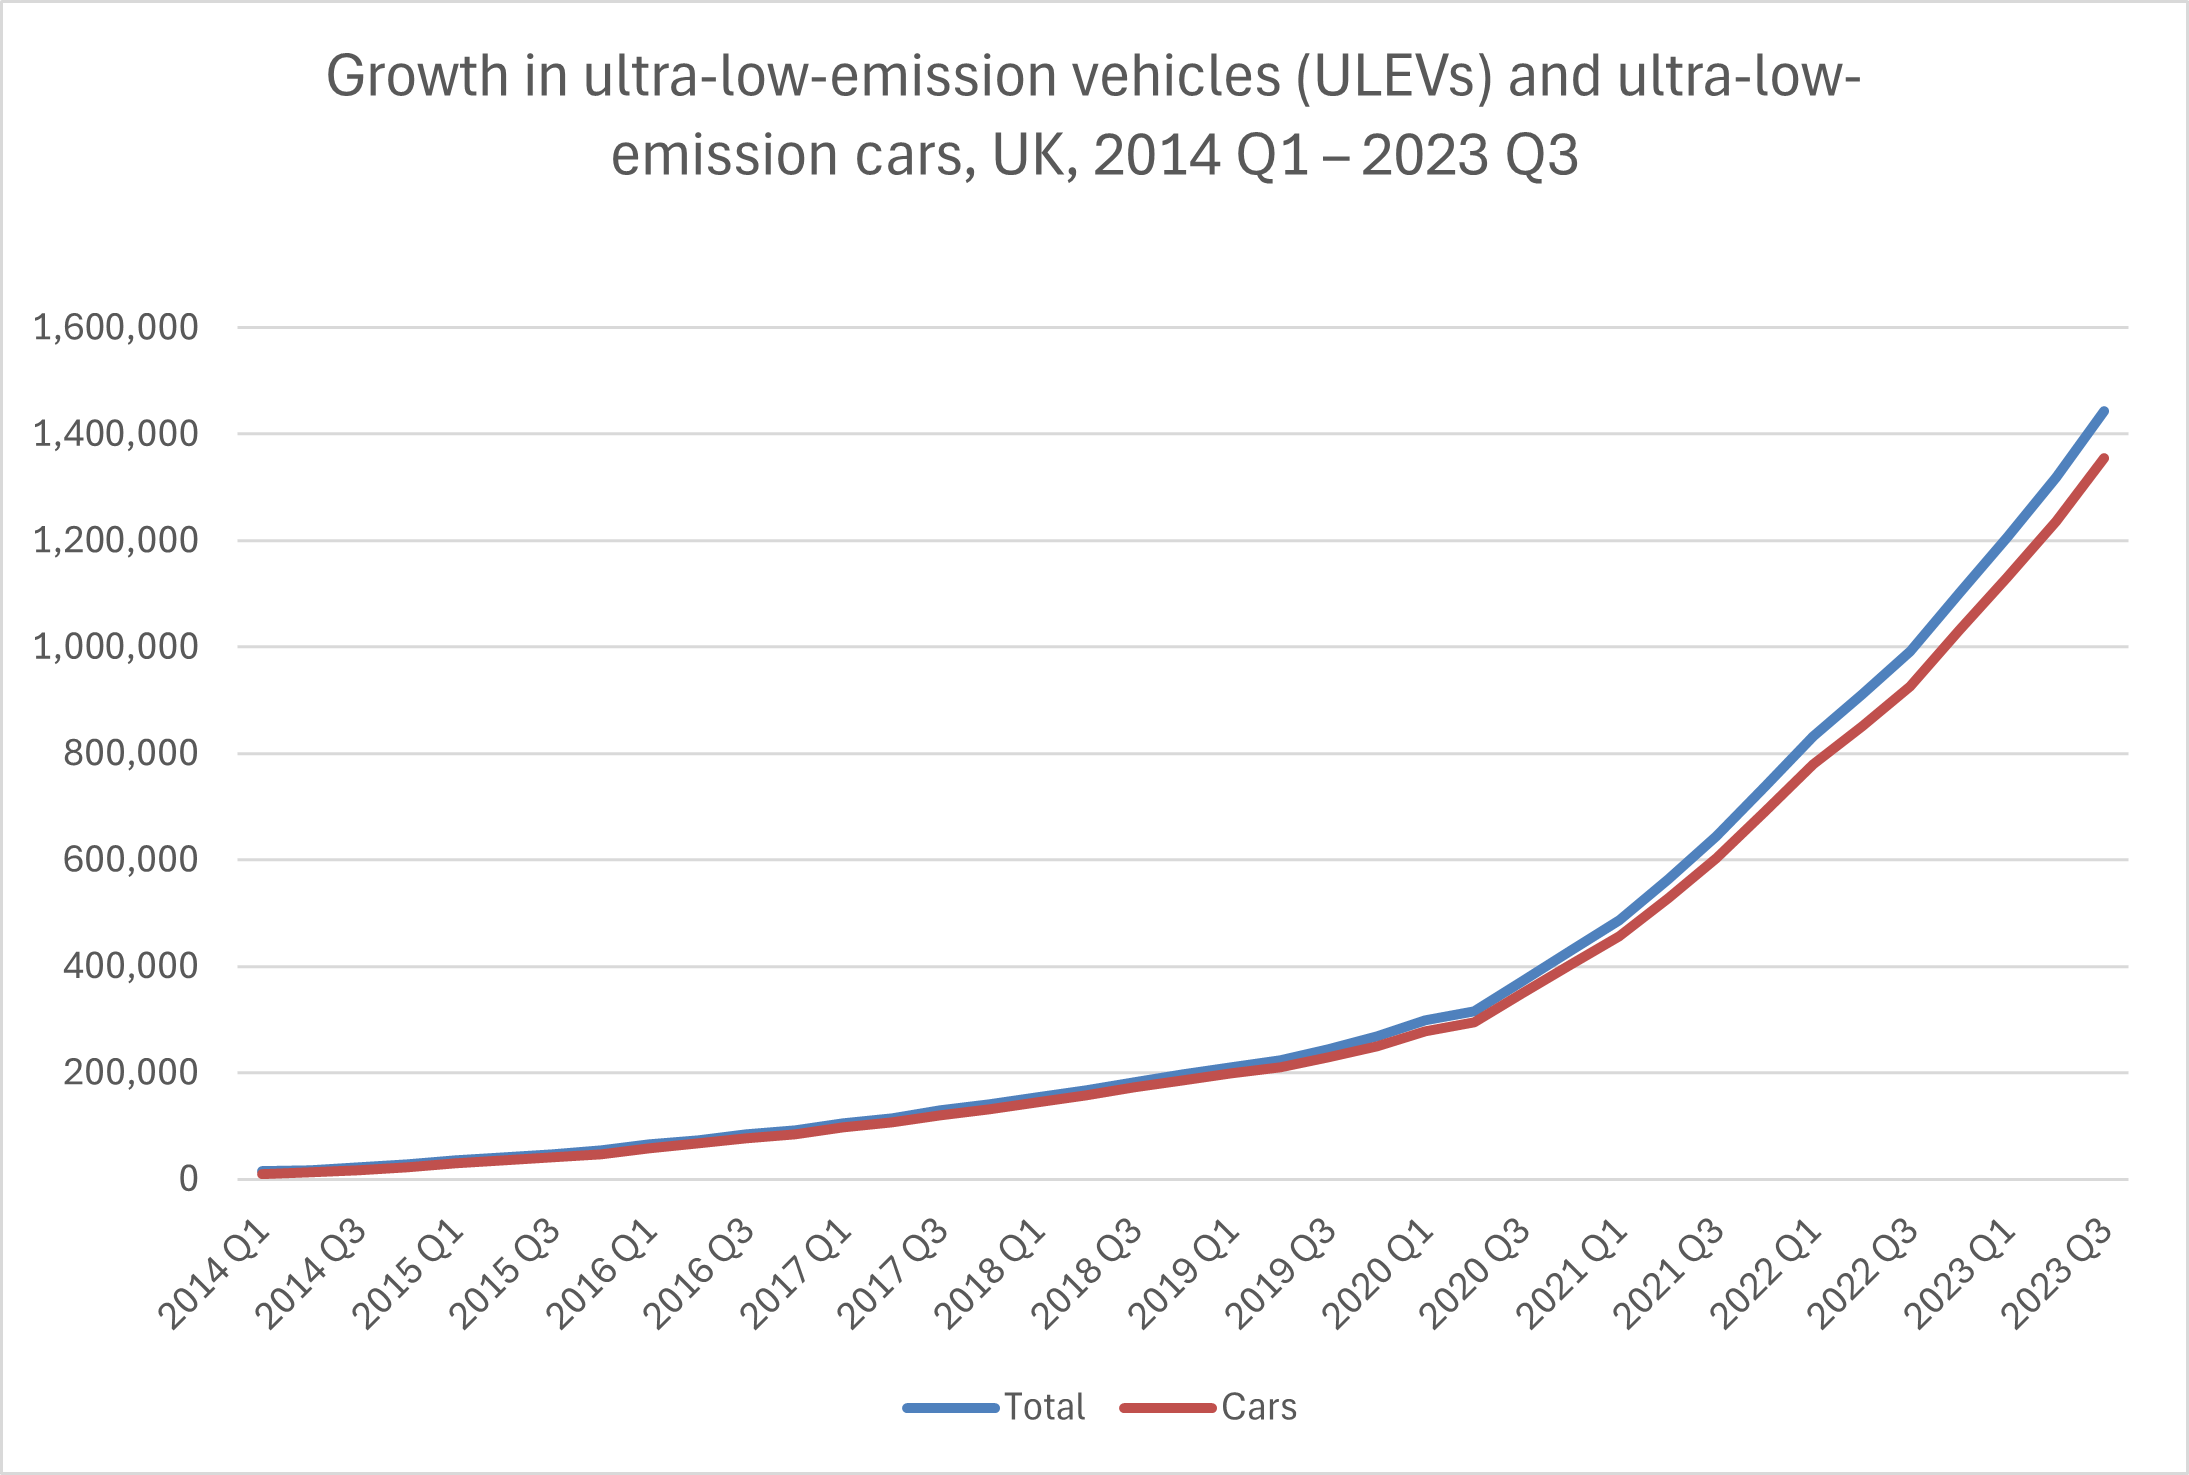 ULEV growth 2014 - 2023